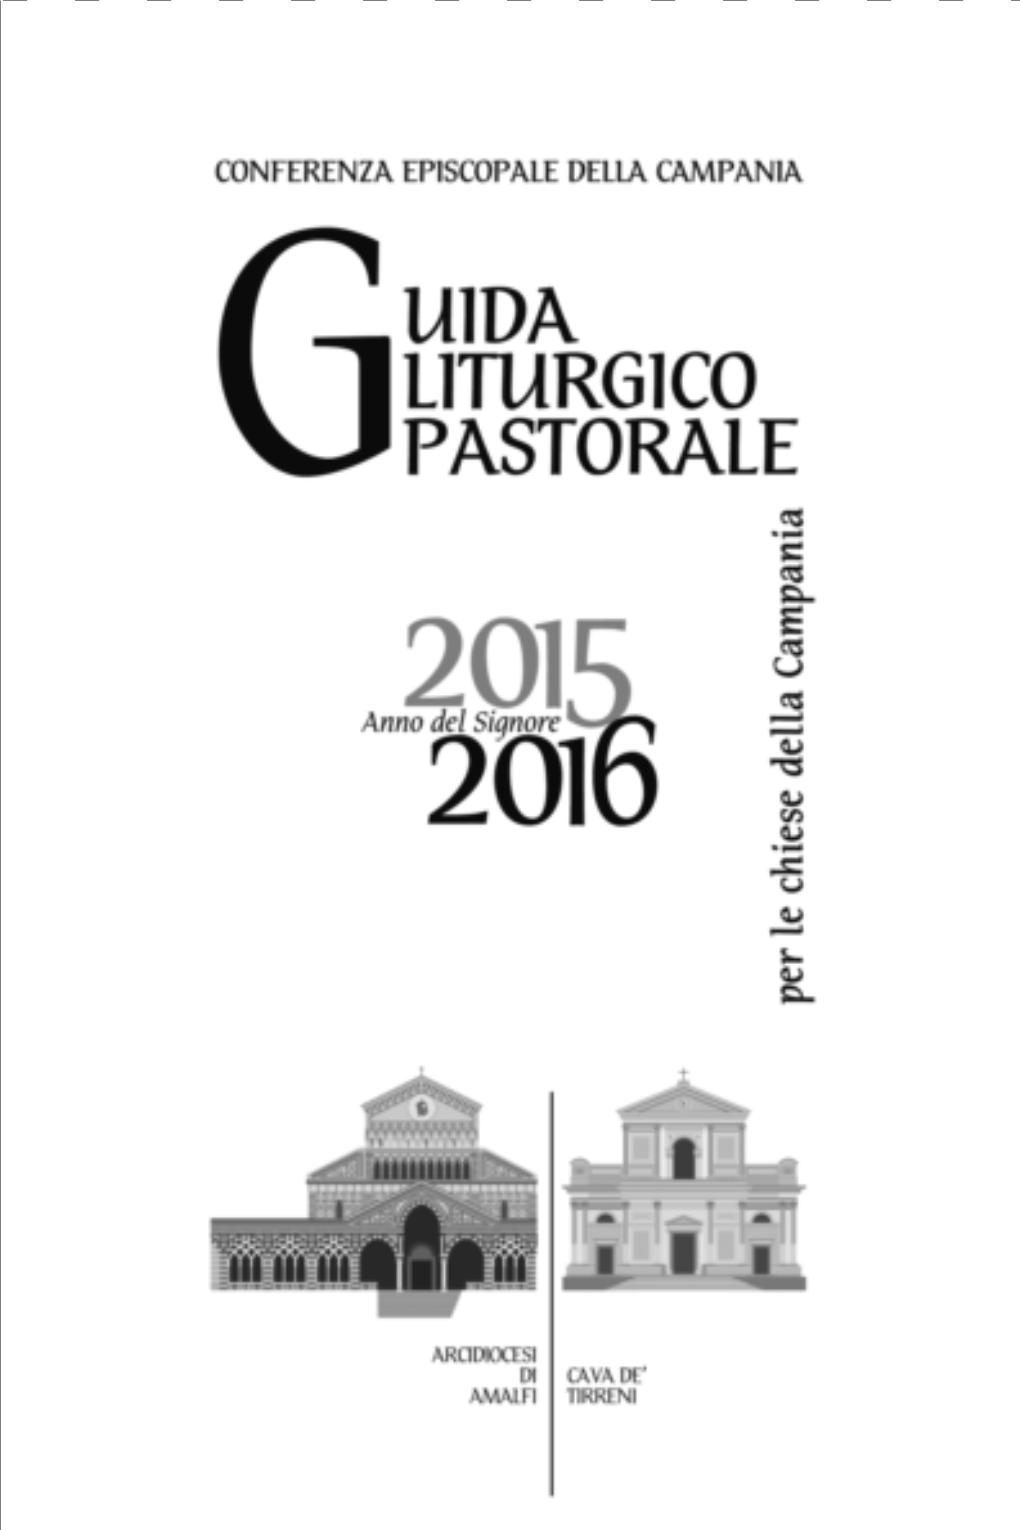 Guida-Liturgica-2015-2016.Pdf